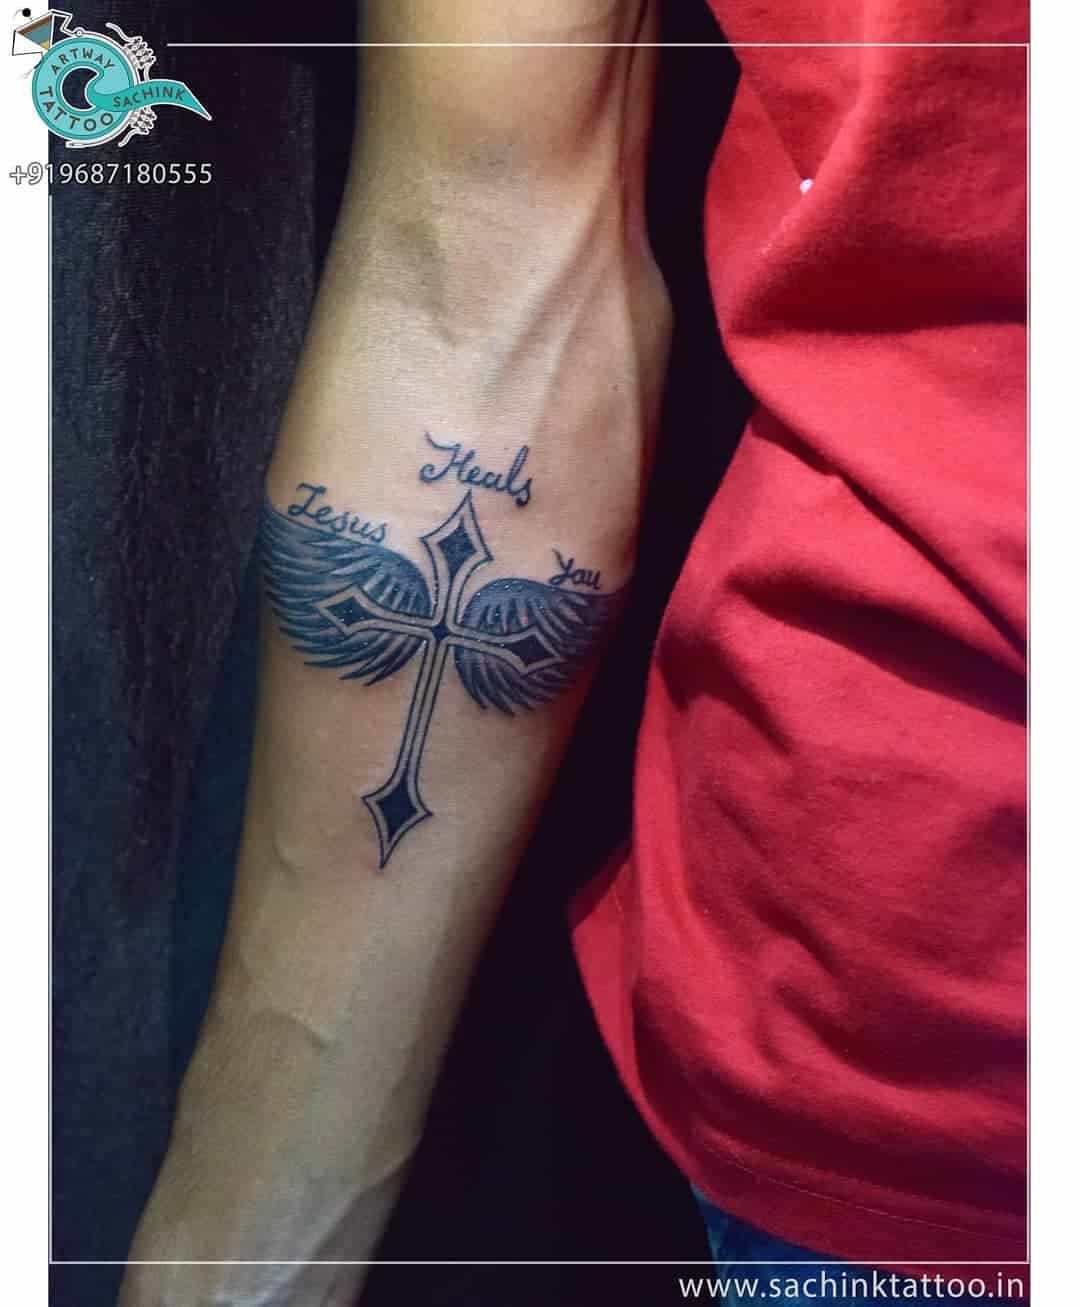 Cross Tattoos, saved tattoo, 16